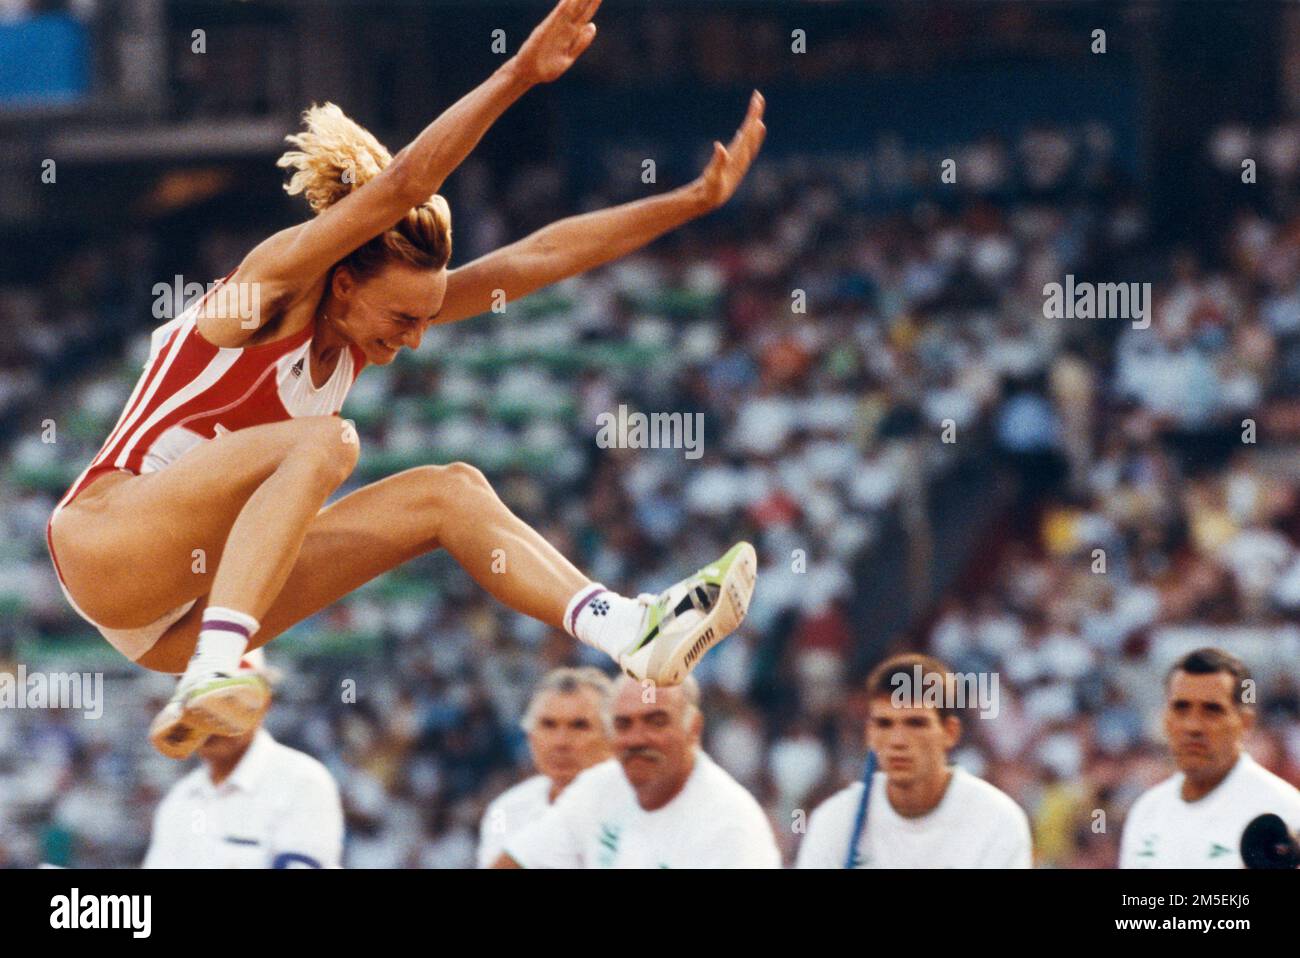 STOCKHOLM 1999-07-01 Heike Drechsler, deutscher ehemaliger Leichtathlet, einer der erfolgreichsten Springer aller Zeiten. Es gab viele Anschuldigungen wegen Drogenmissbrauchs, während sie für Ostdeutschland konkurrierte, aber nie gescheitert ist. Stockfoto